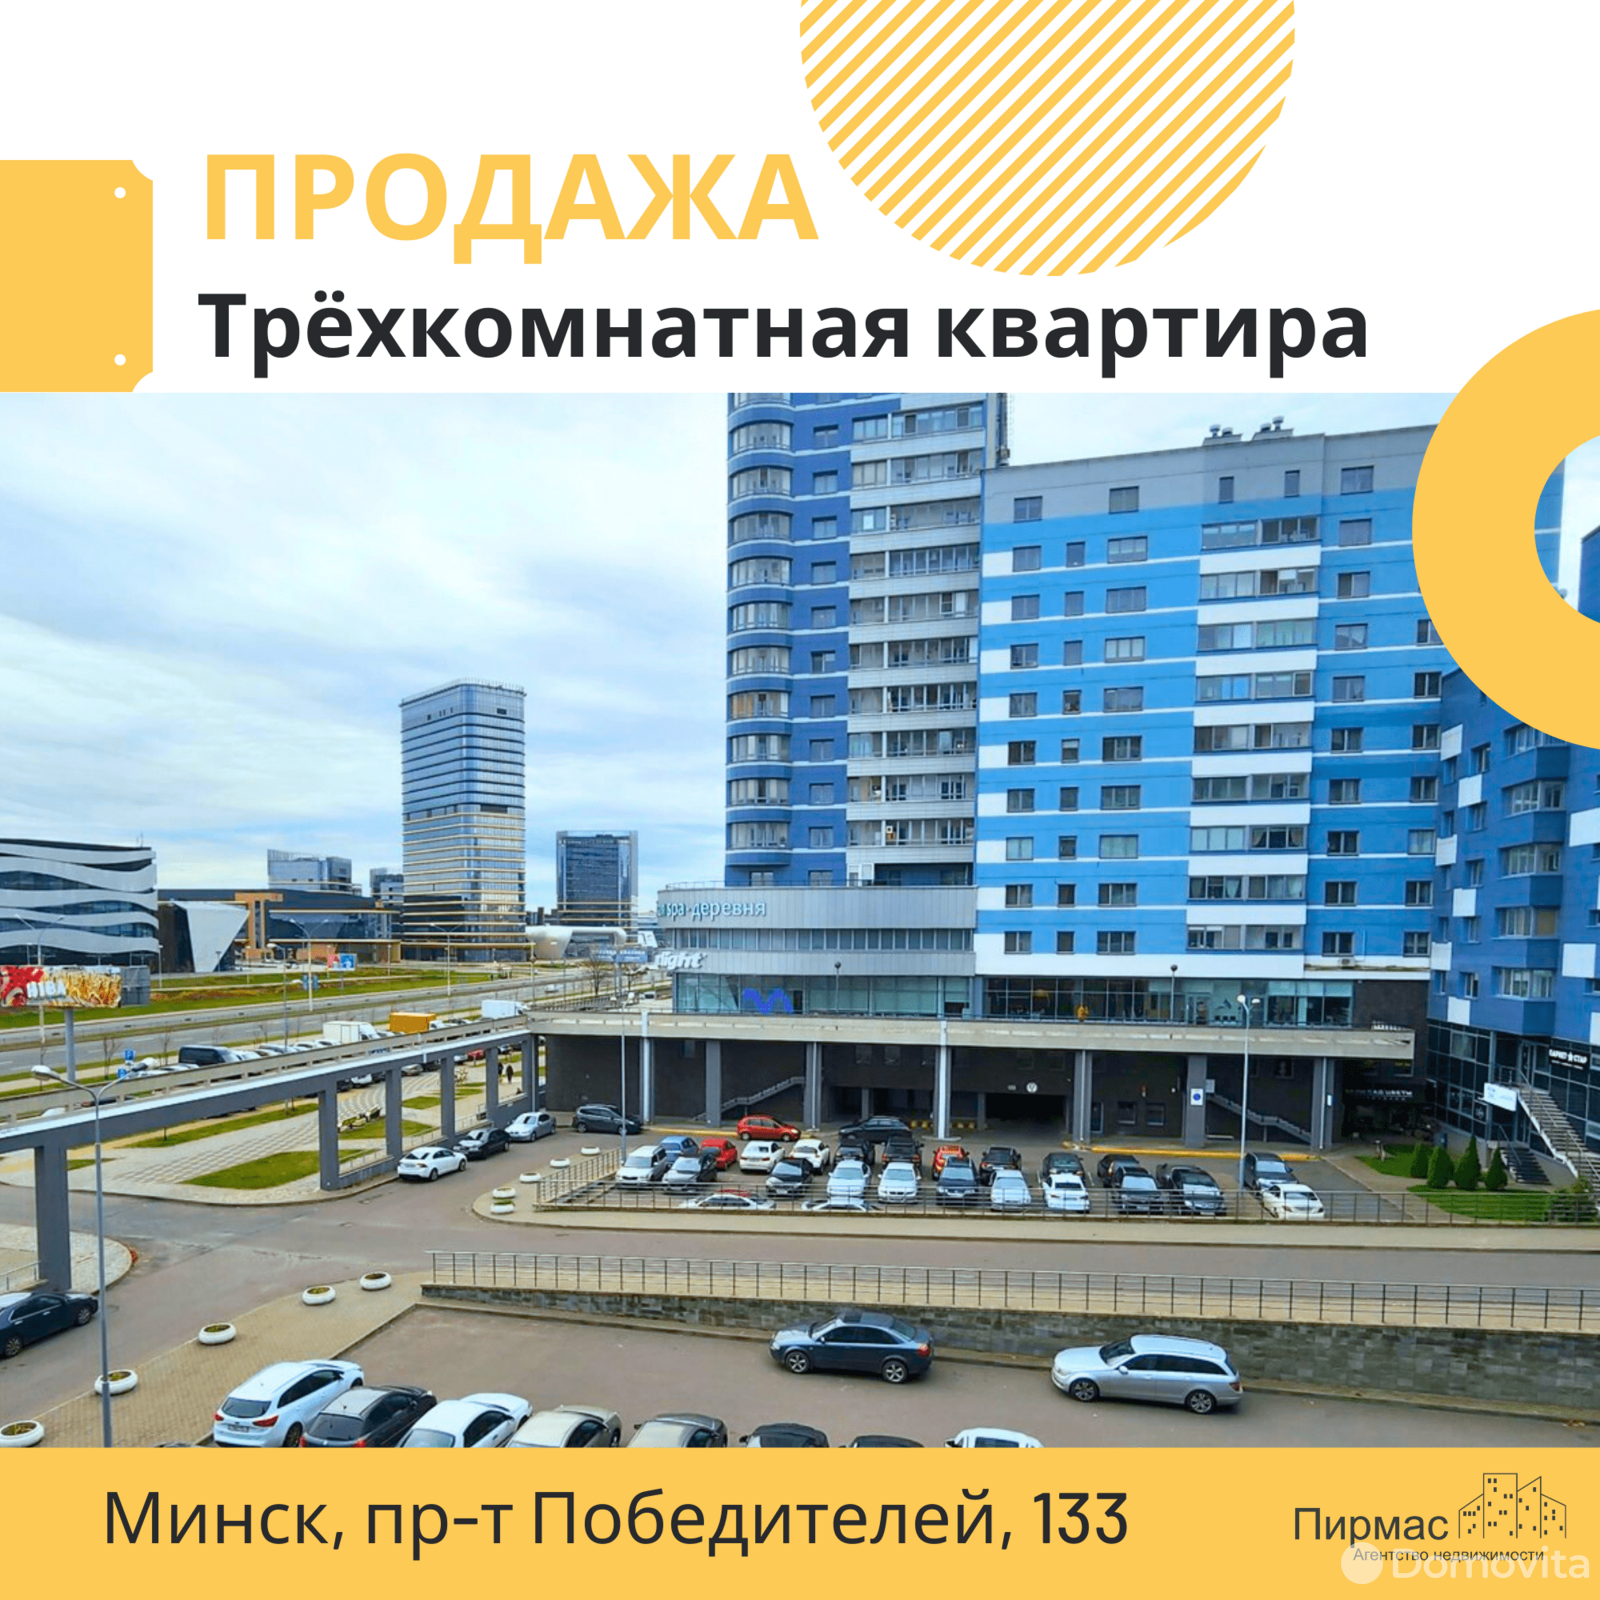 продажа квартиры, Минск, пр-т Победителей, д. 133